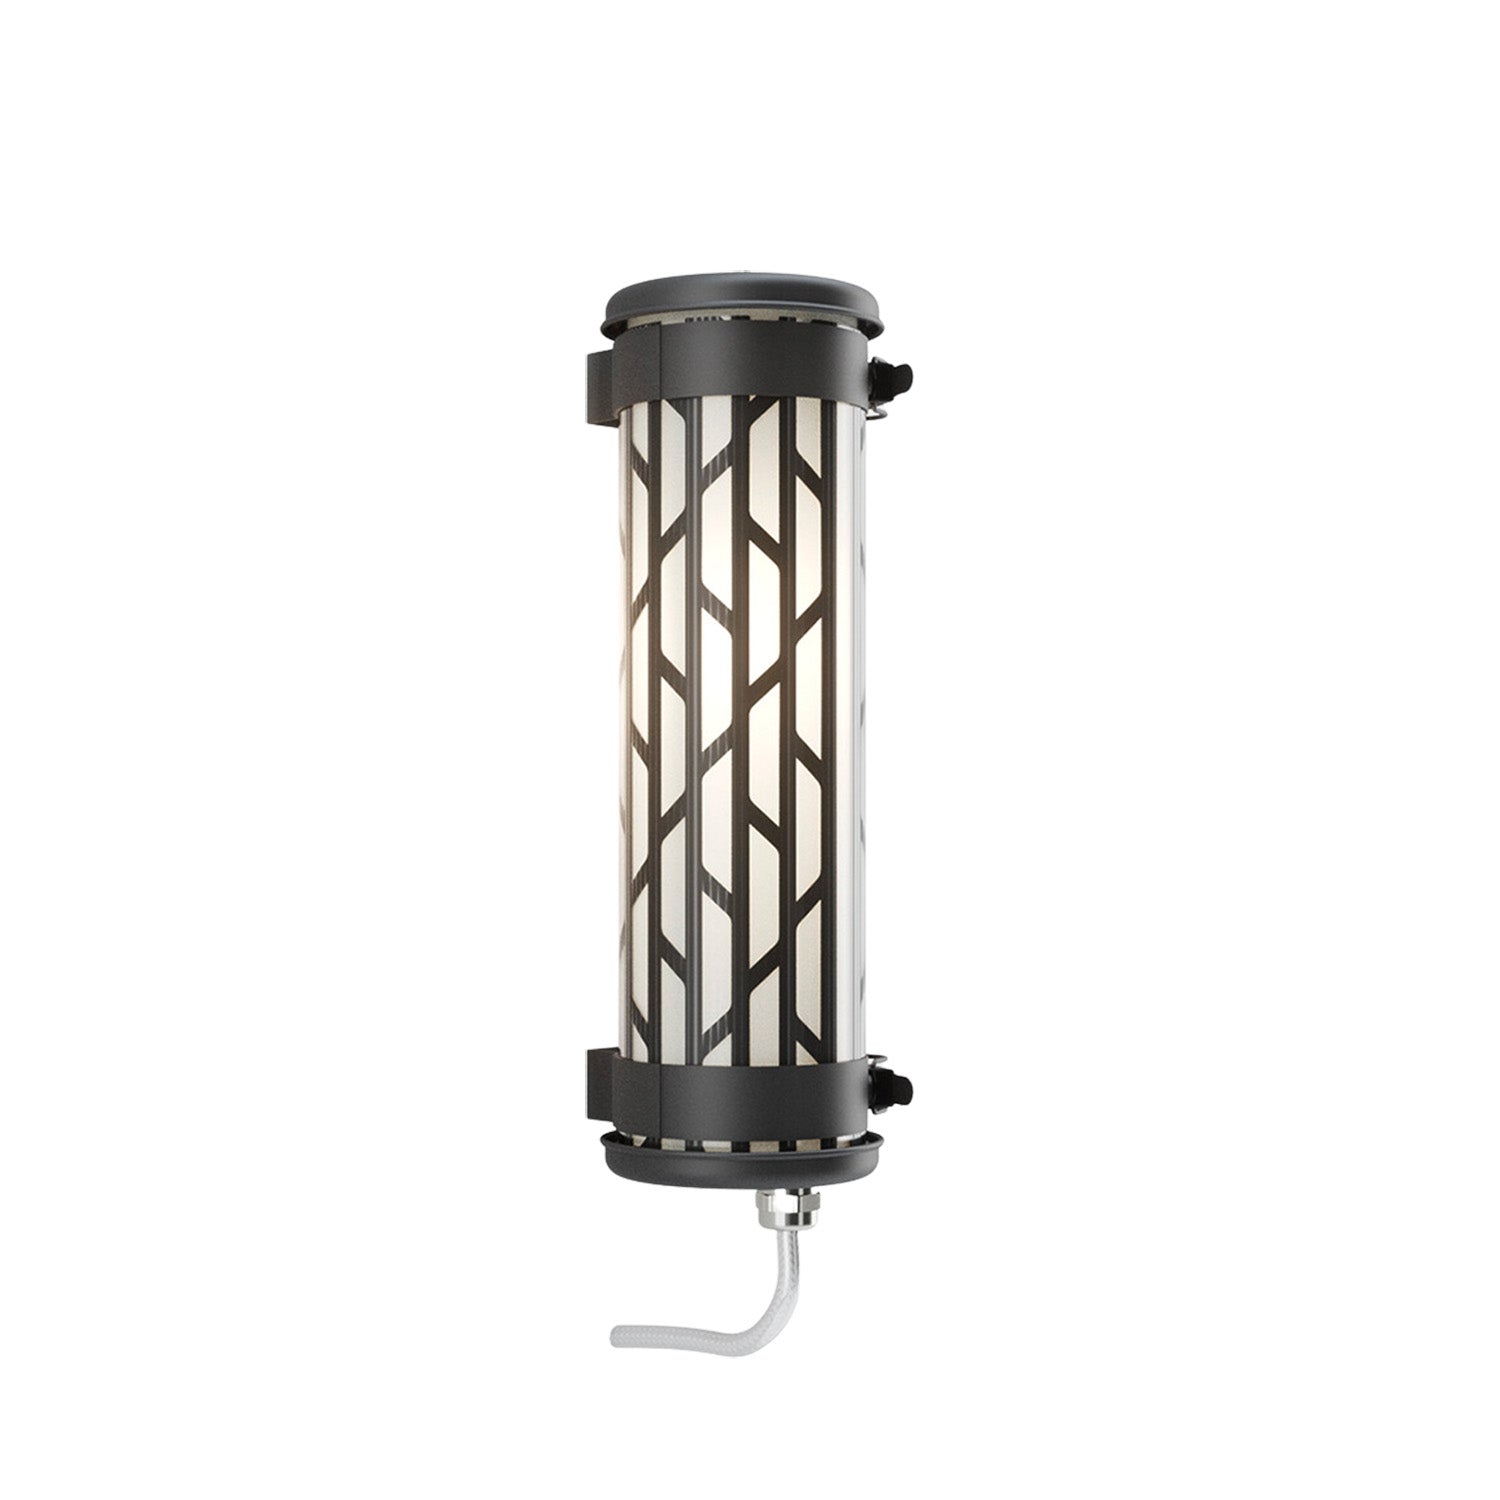 BELLEVILLE MINI - IP68 waterproof black steel tube wall light